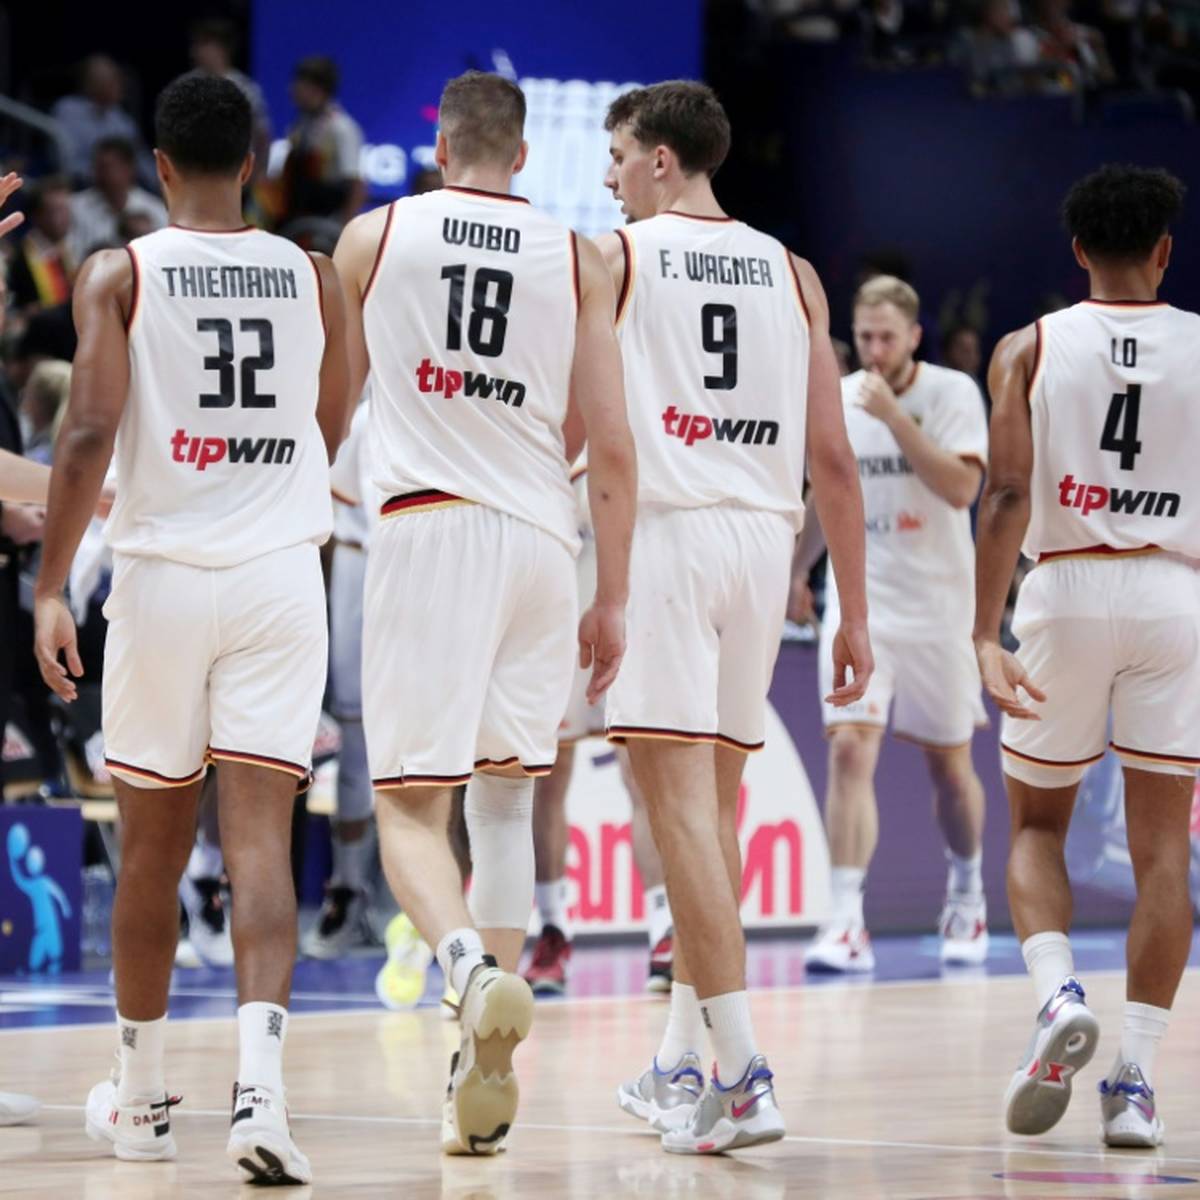 Das deutsche Basketball-Nationalteam absolviert sein erstes Länderspiel nach dem Gewinn der Bronzemedaille EM im kommenden Monat in Bamberg.